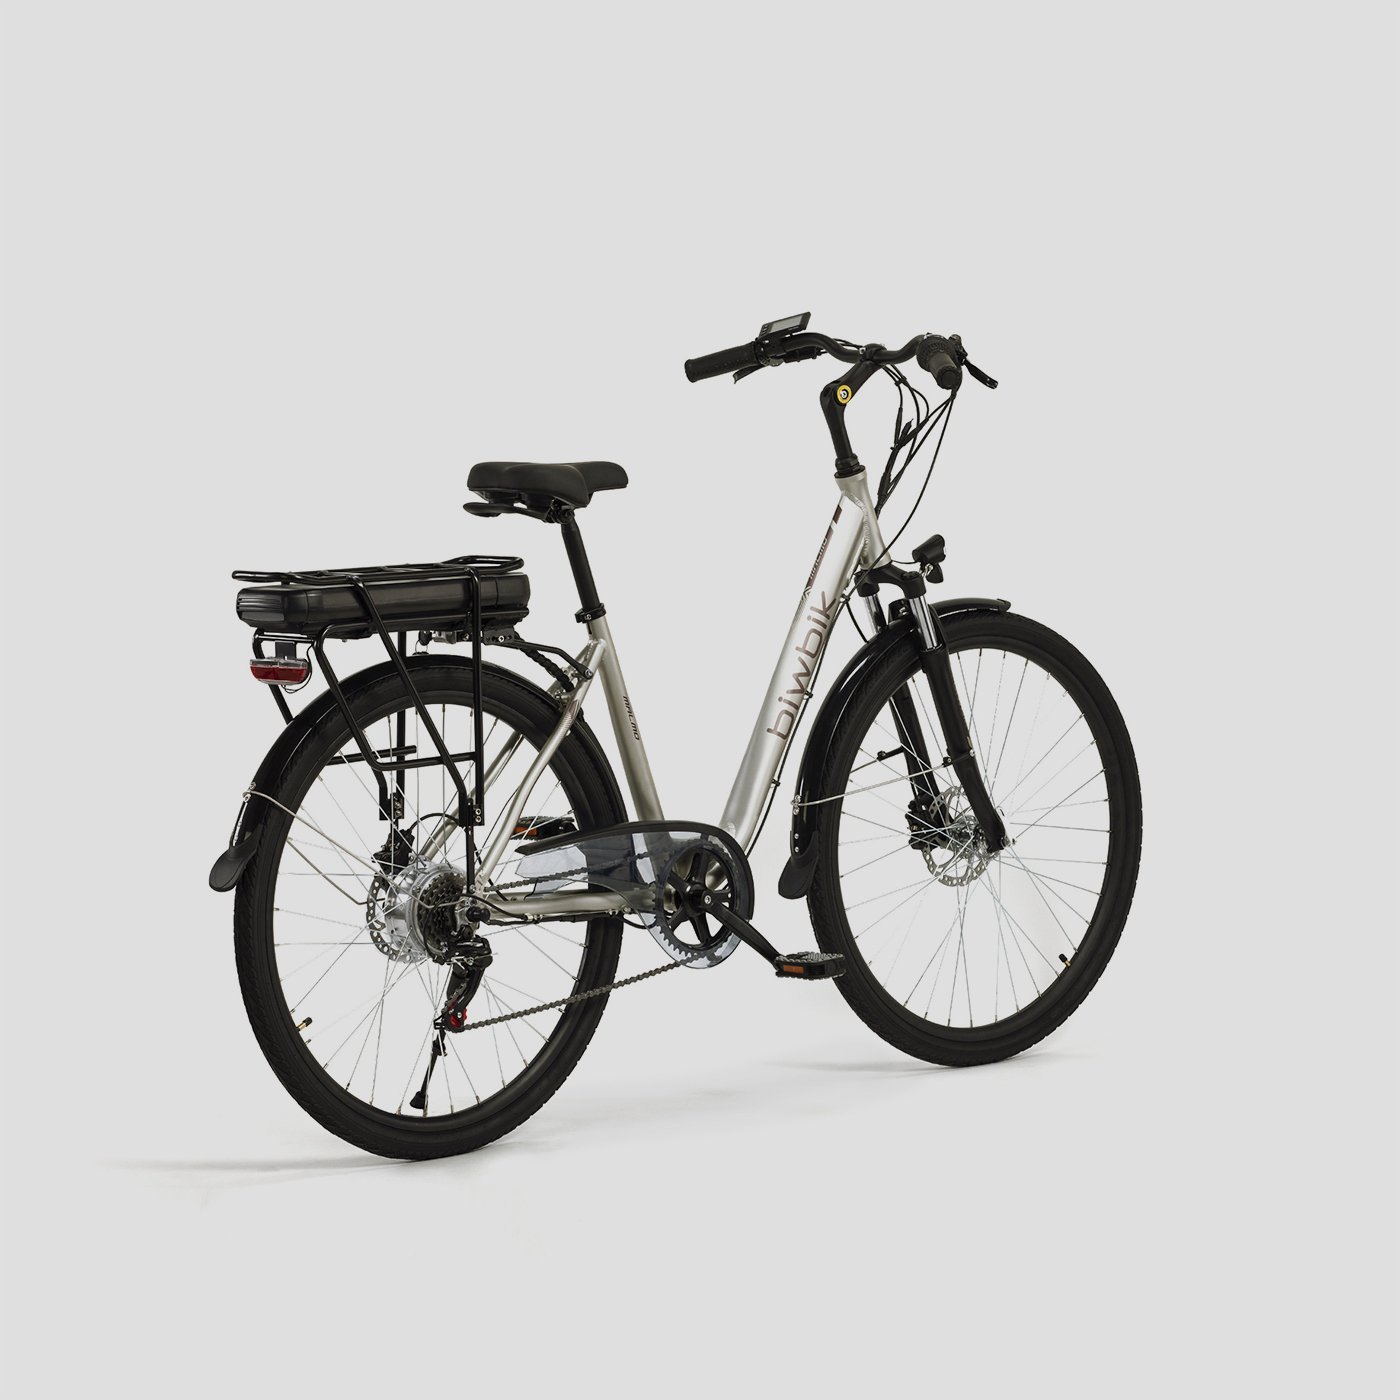 Malmo urban electric bike